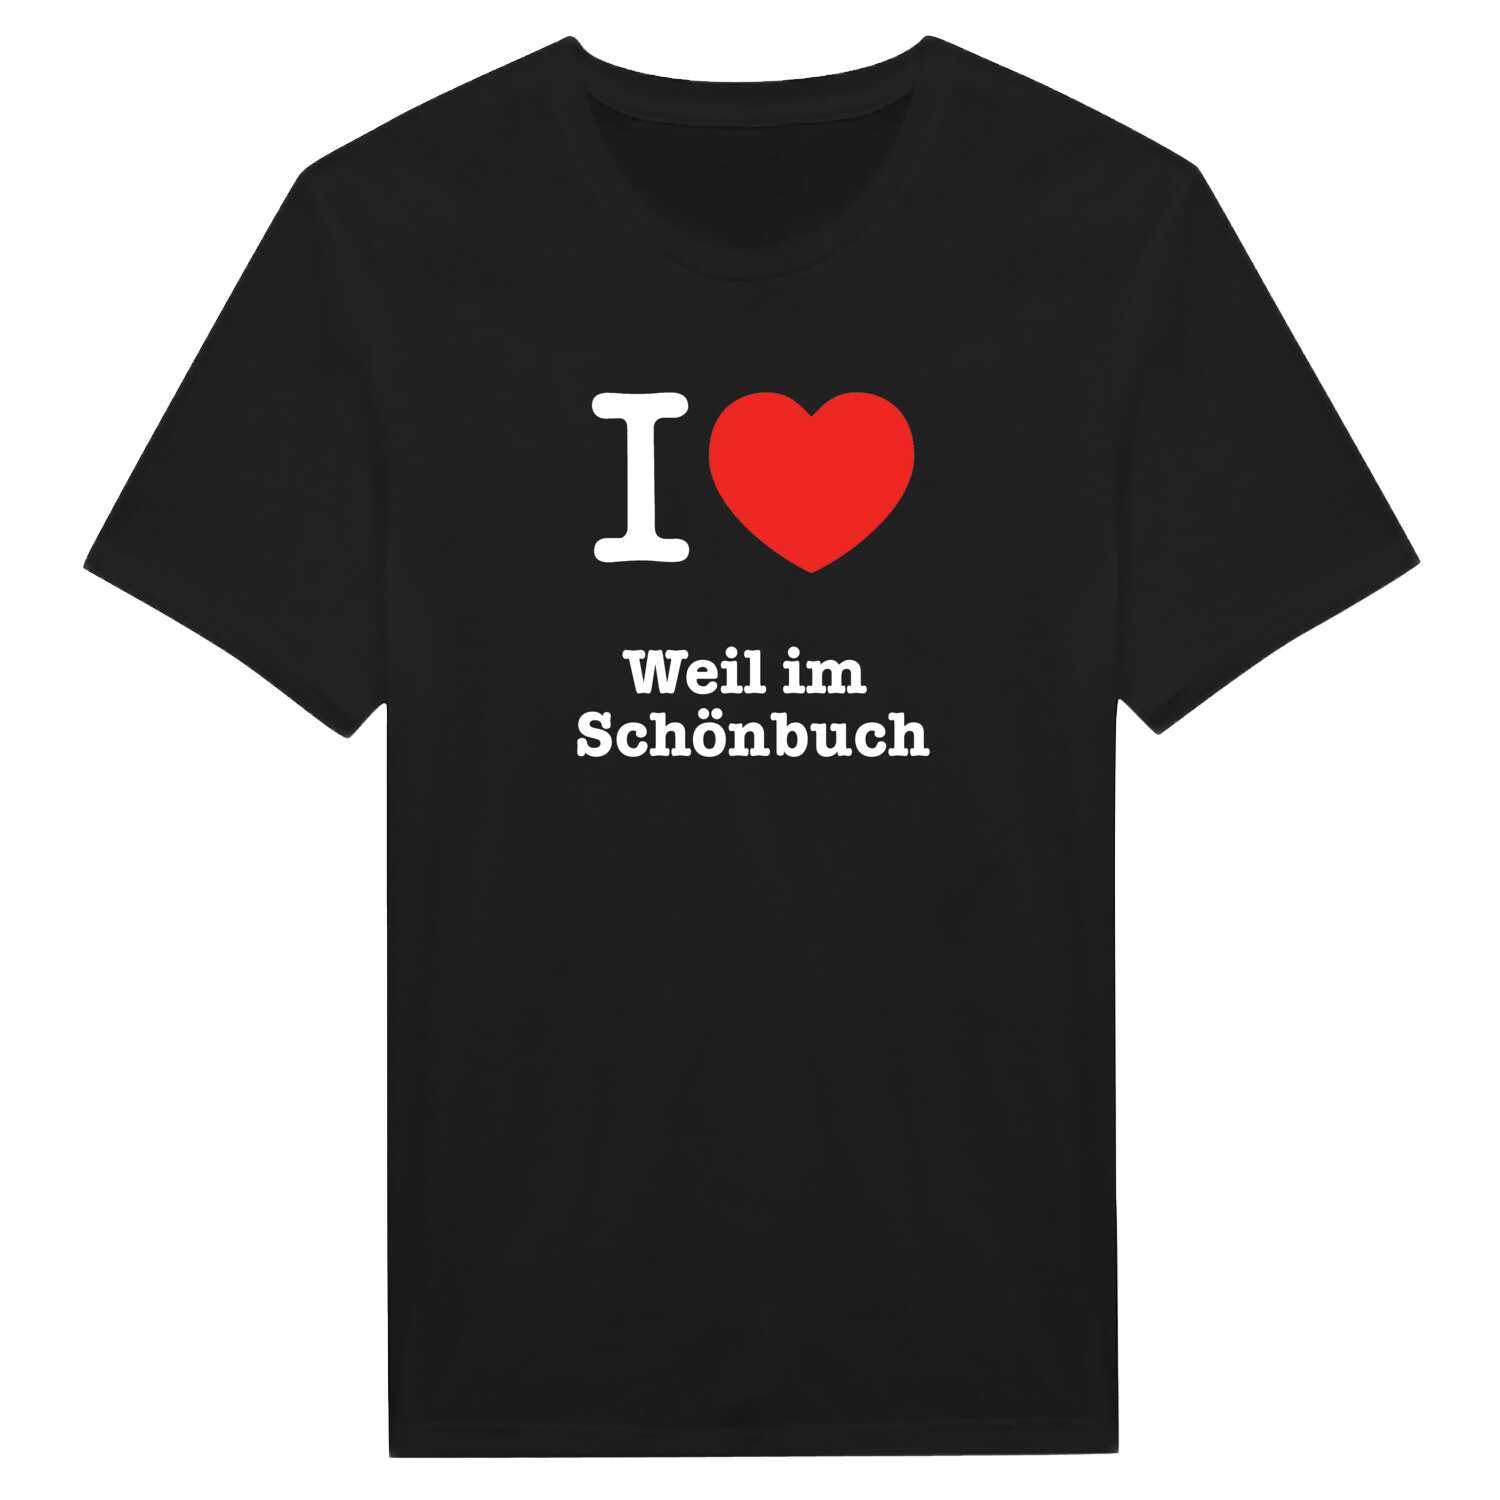 Weil im Schönbuch T-Shirt »I love«